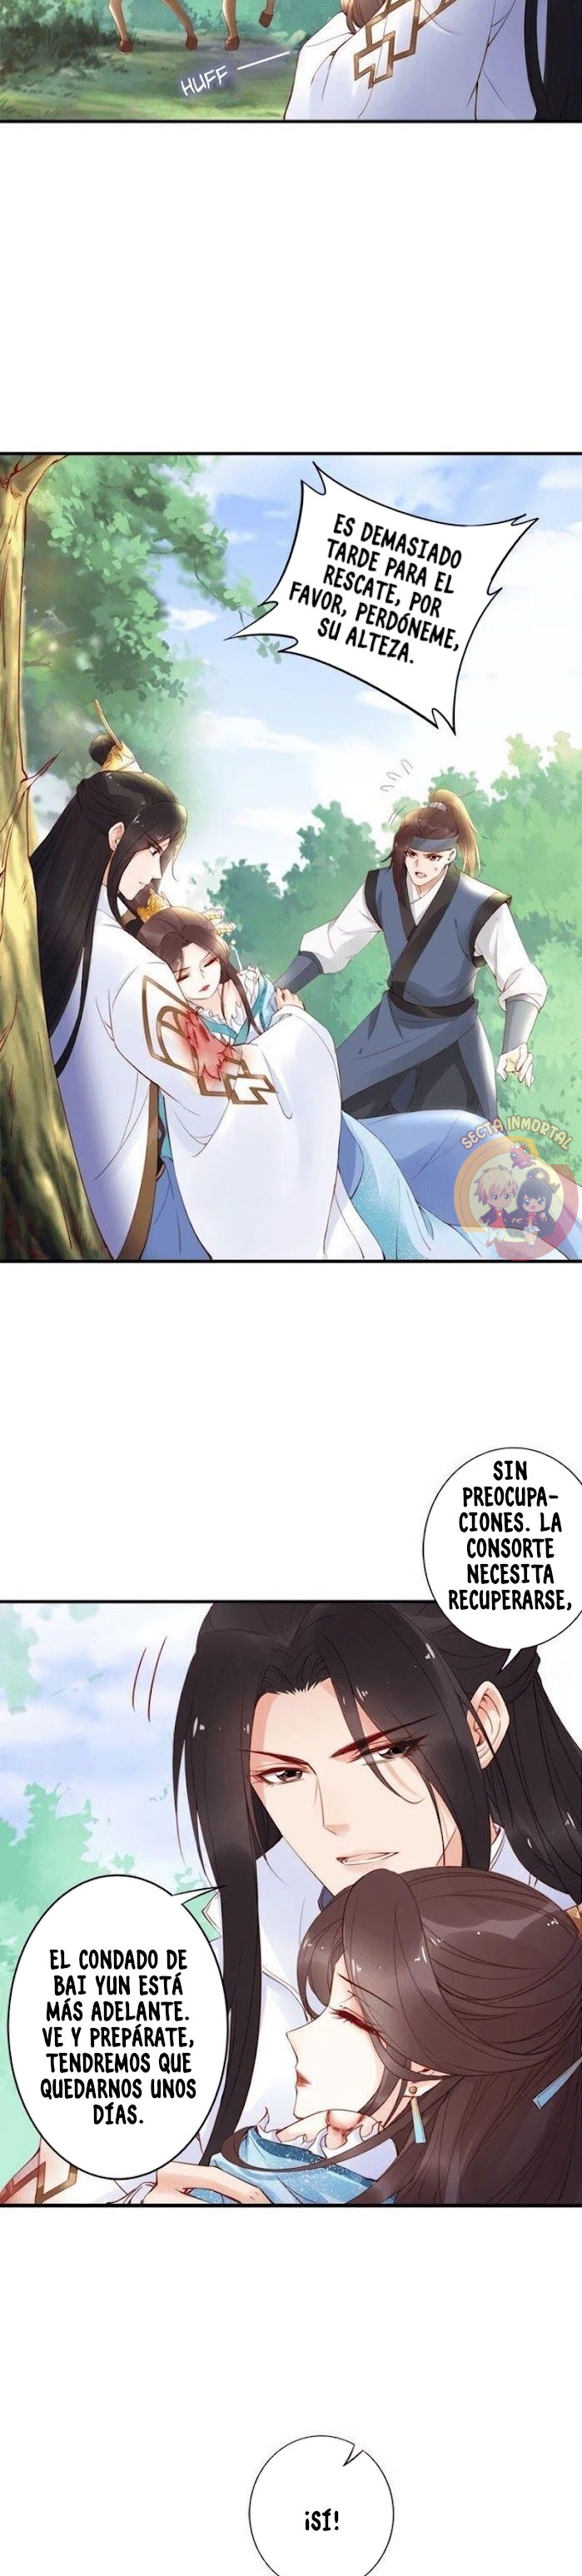 Manga Fenix volando desde el Palacio del Este Chapter 22 image number 6